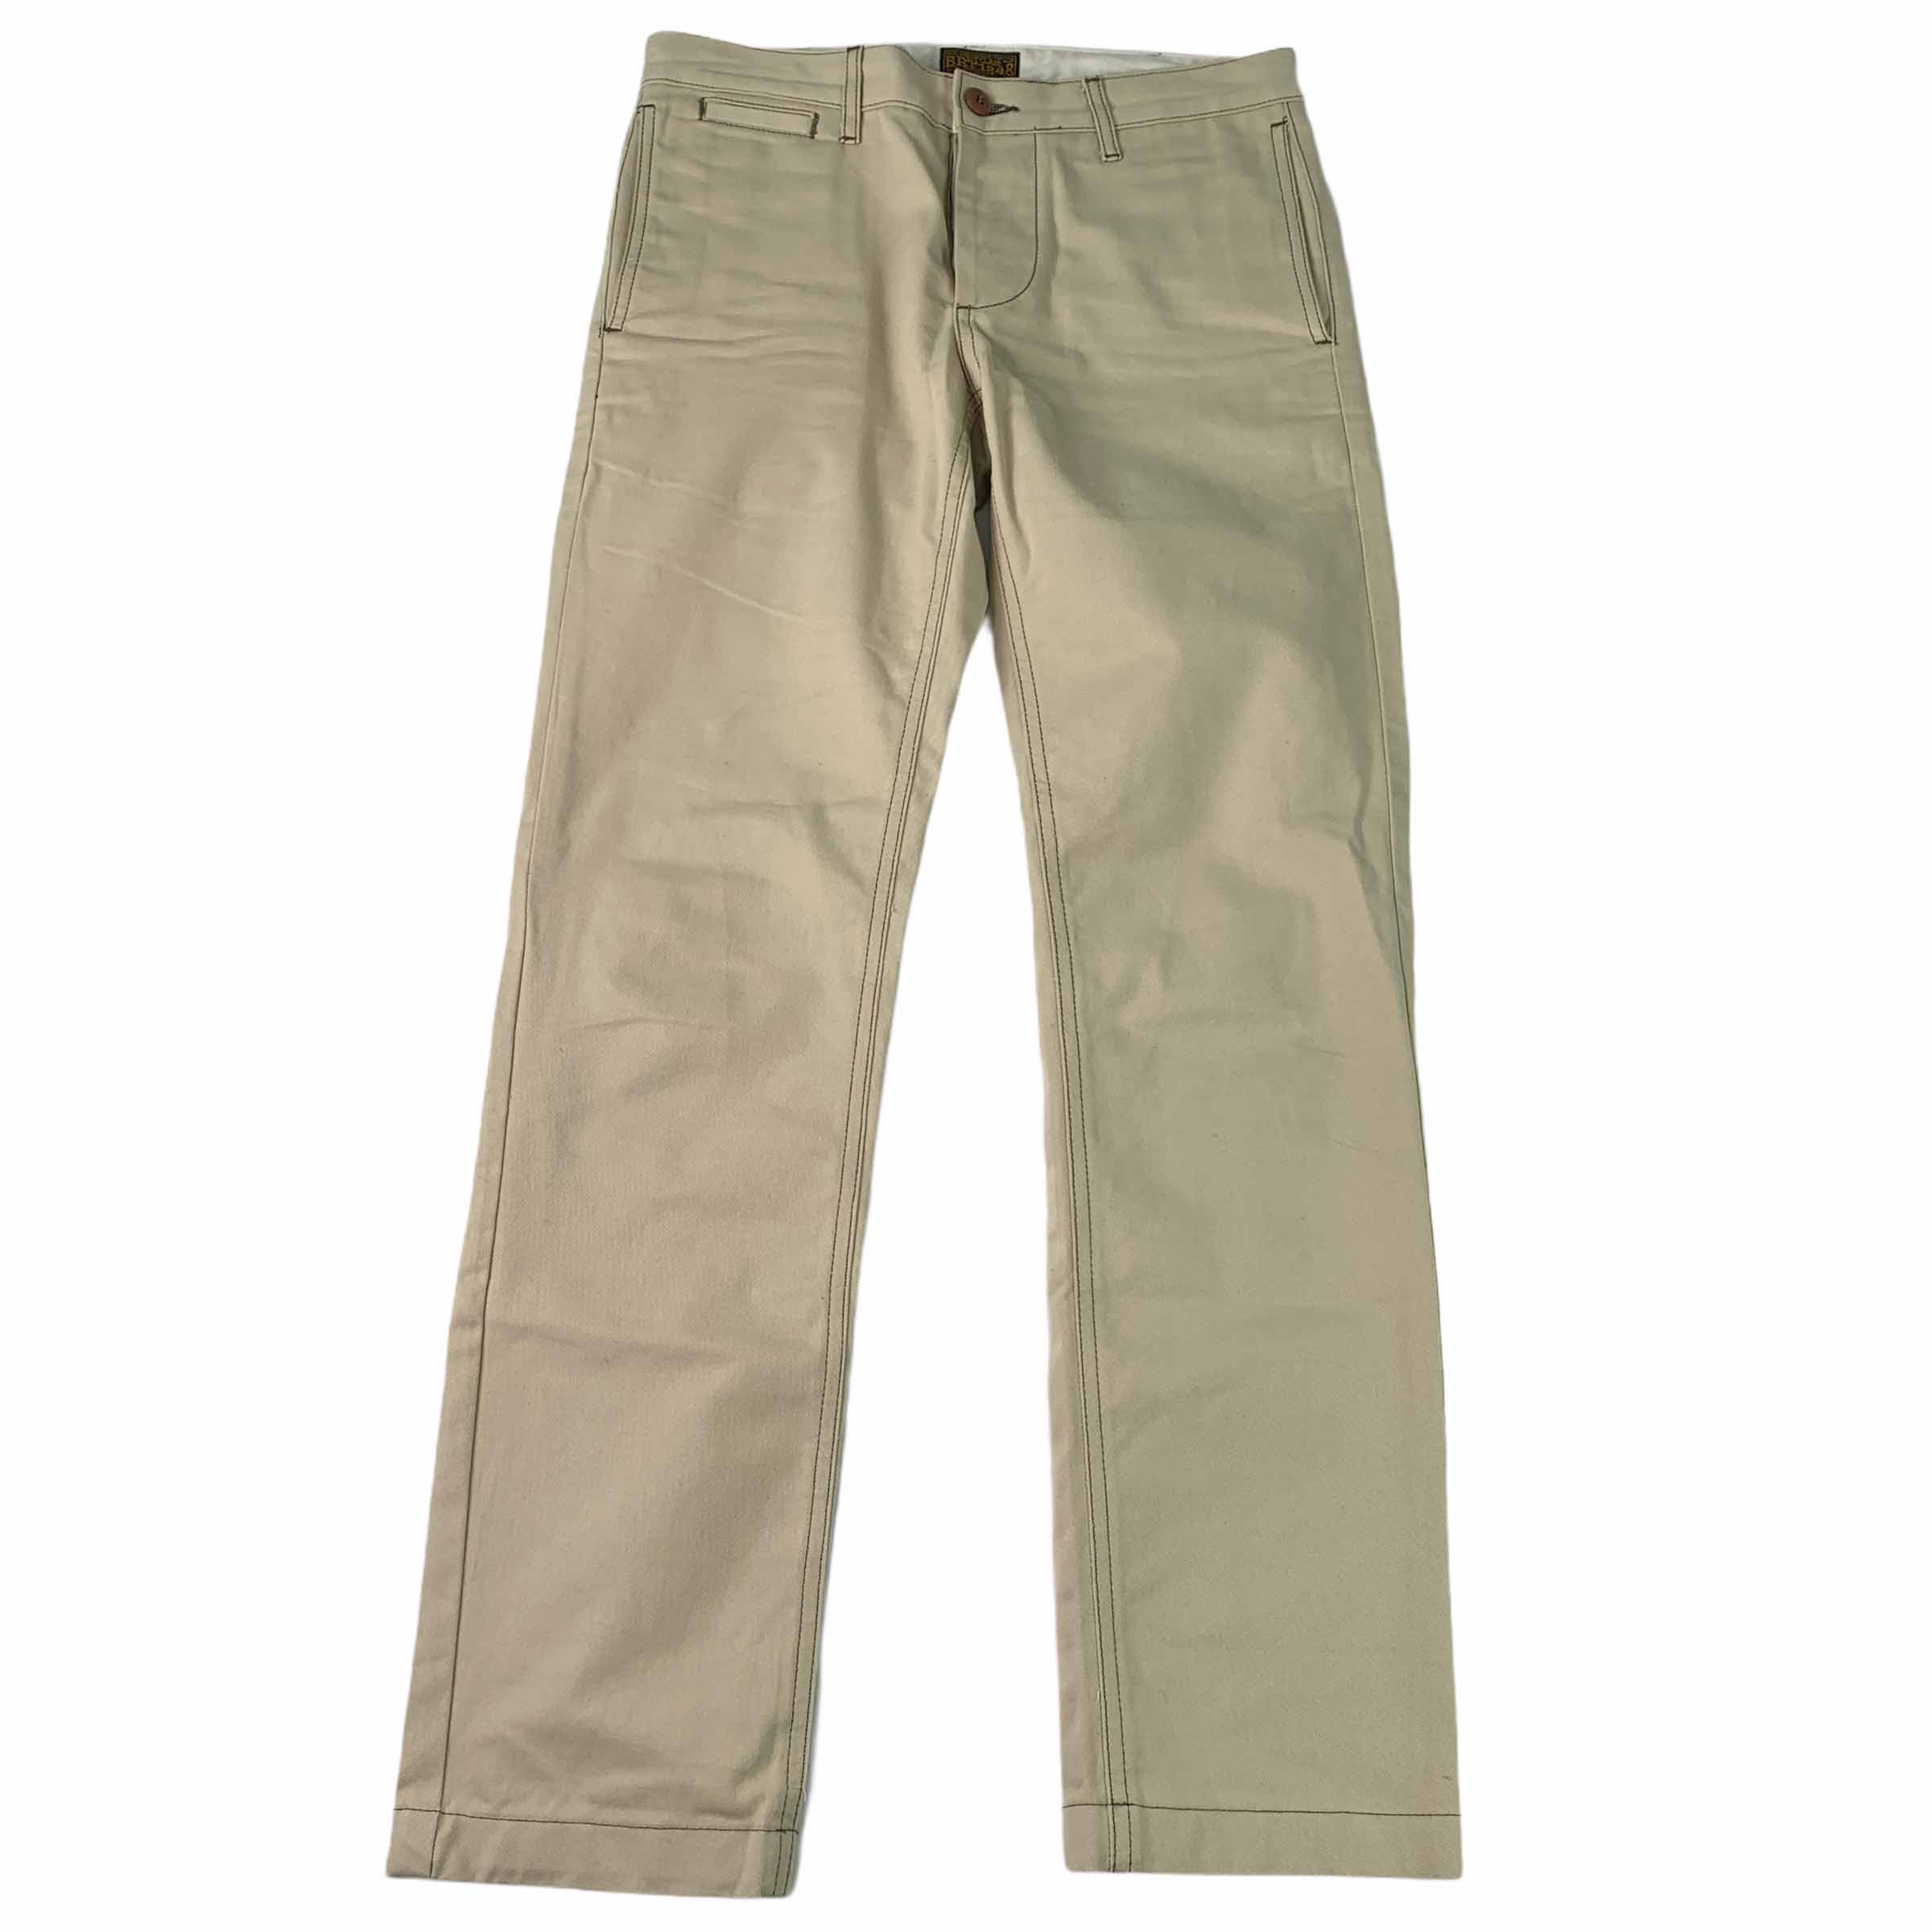 [BRT1848] Beige Cotton Pants - Size 28